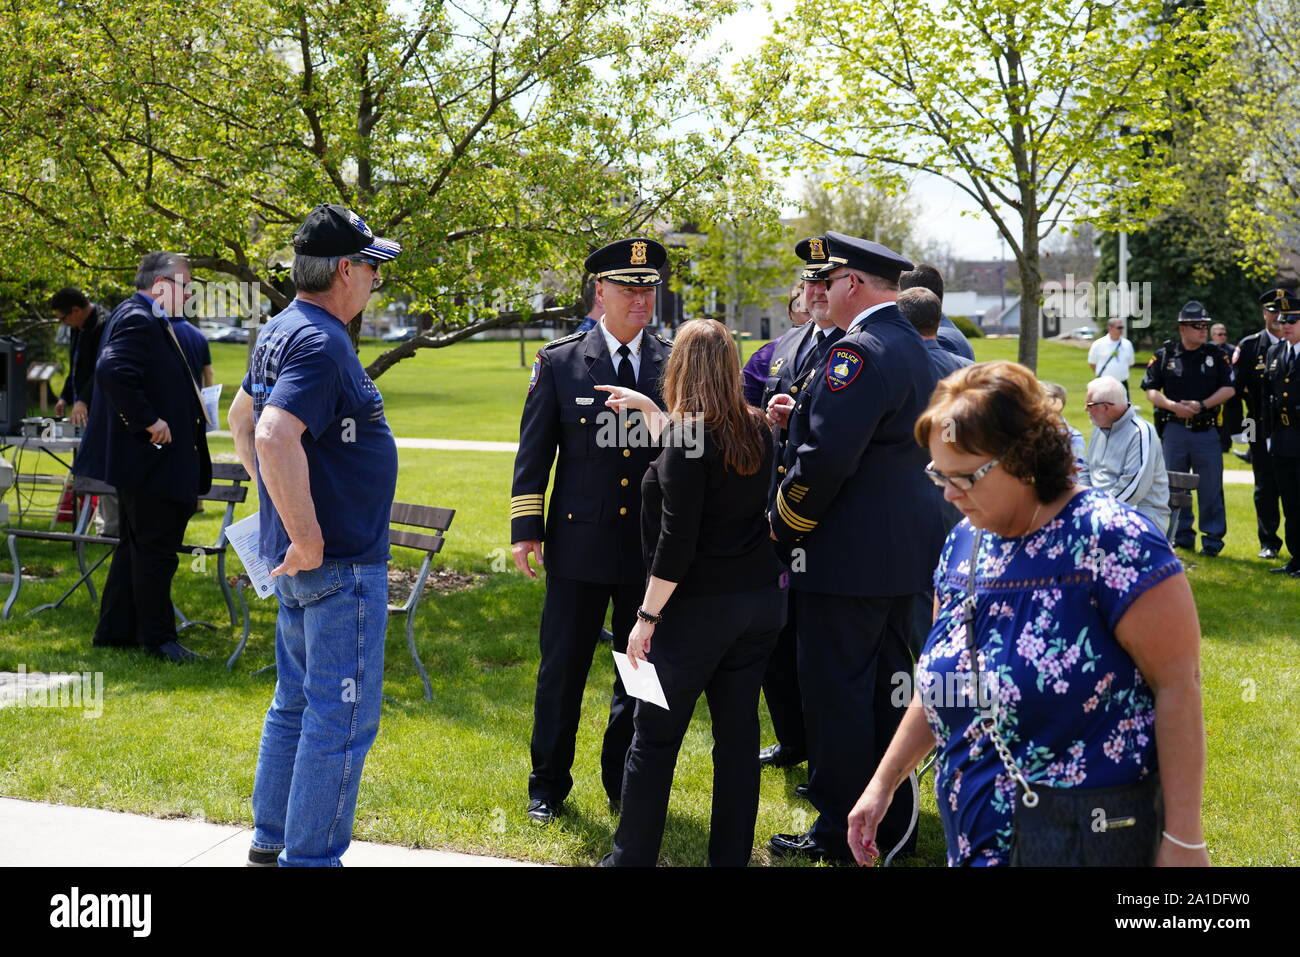 Polizei, State Troopers, Polizeichef, und Feuerwehrmann Offiziere haben die Gedenkstätte am Memorial Day kommen für die Gefallenen, Fond du Lac, Wisconsin Ehre Stockfoto